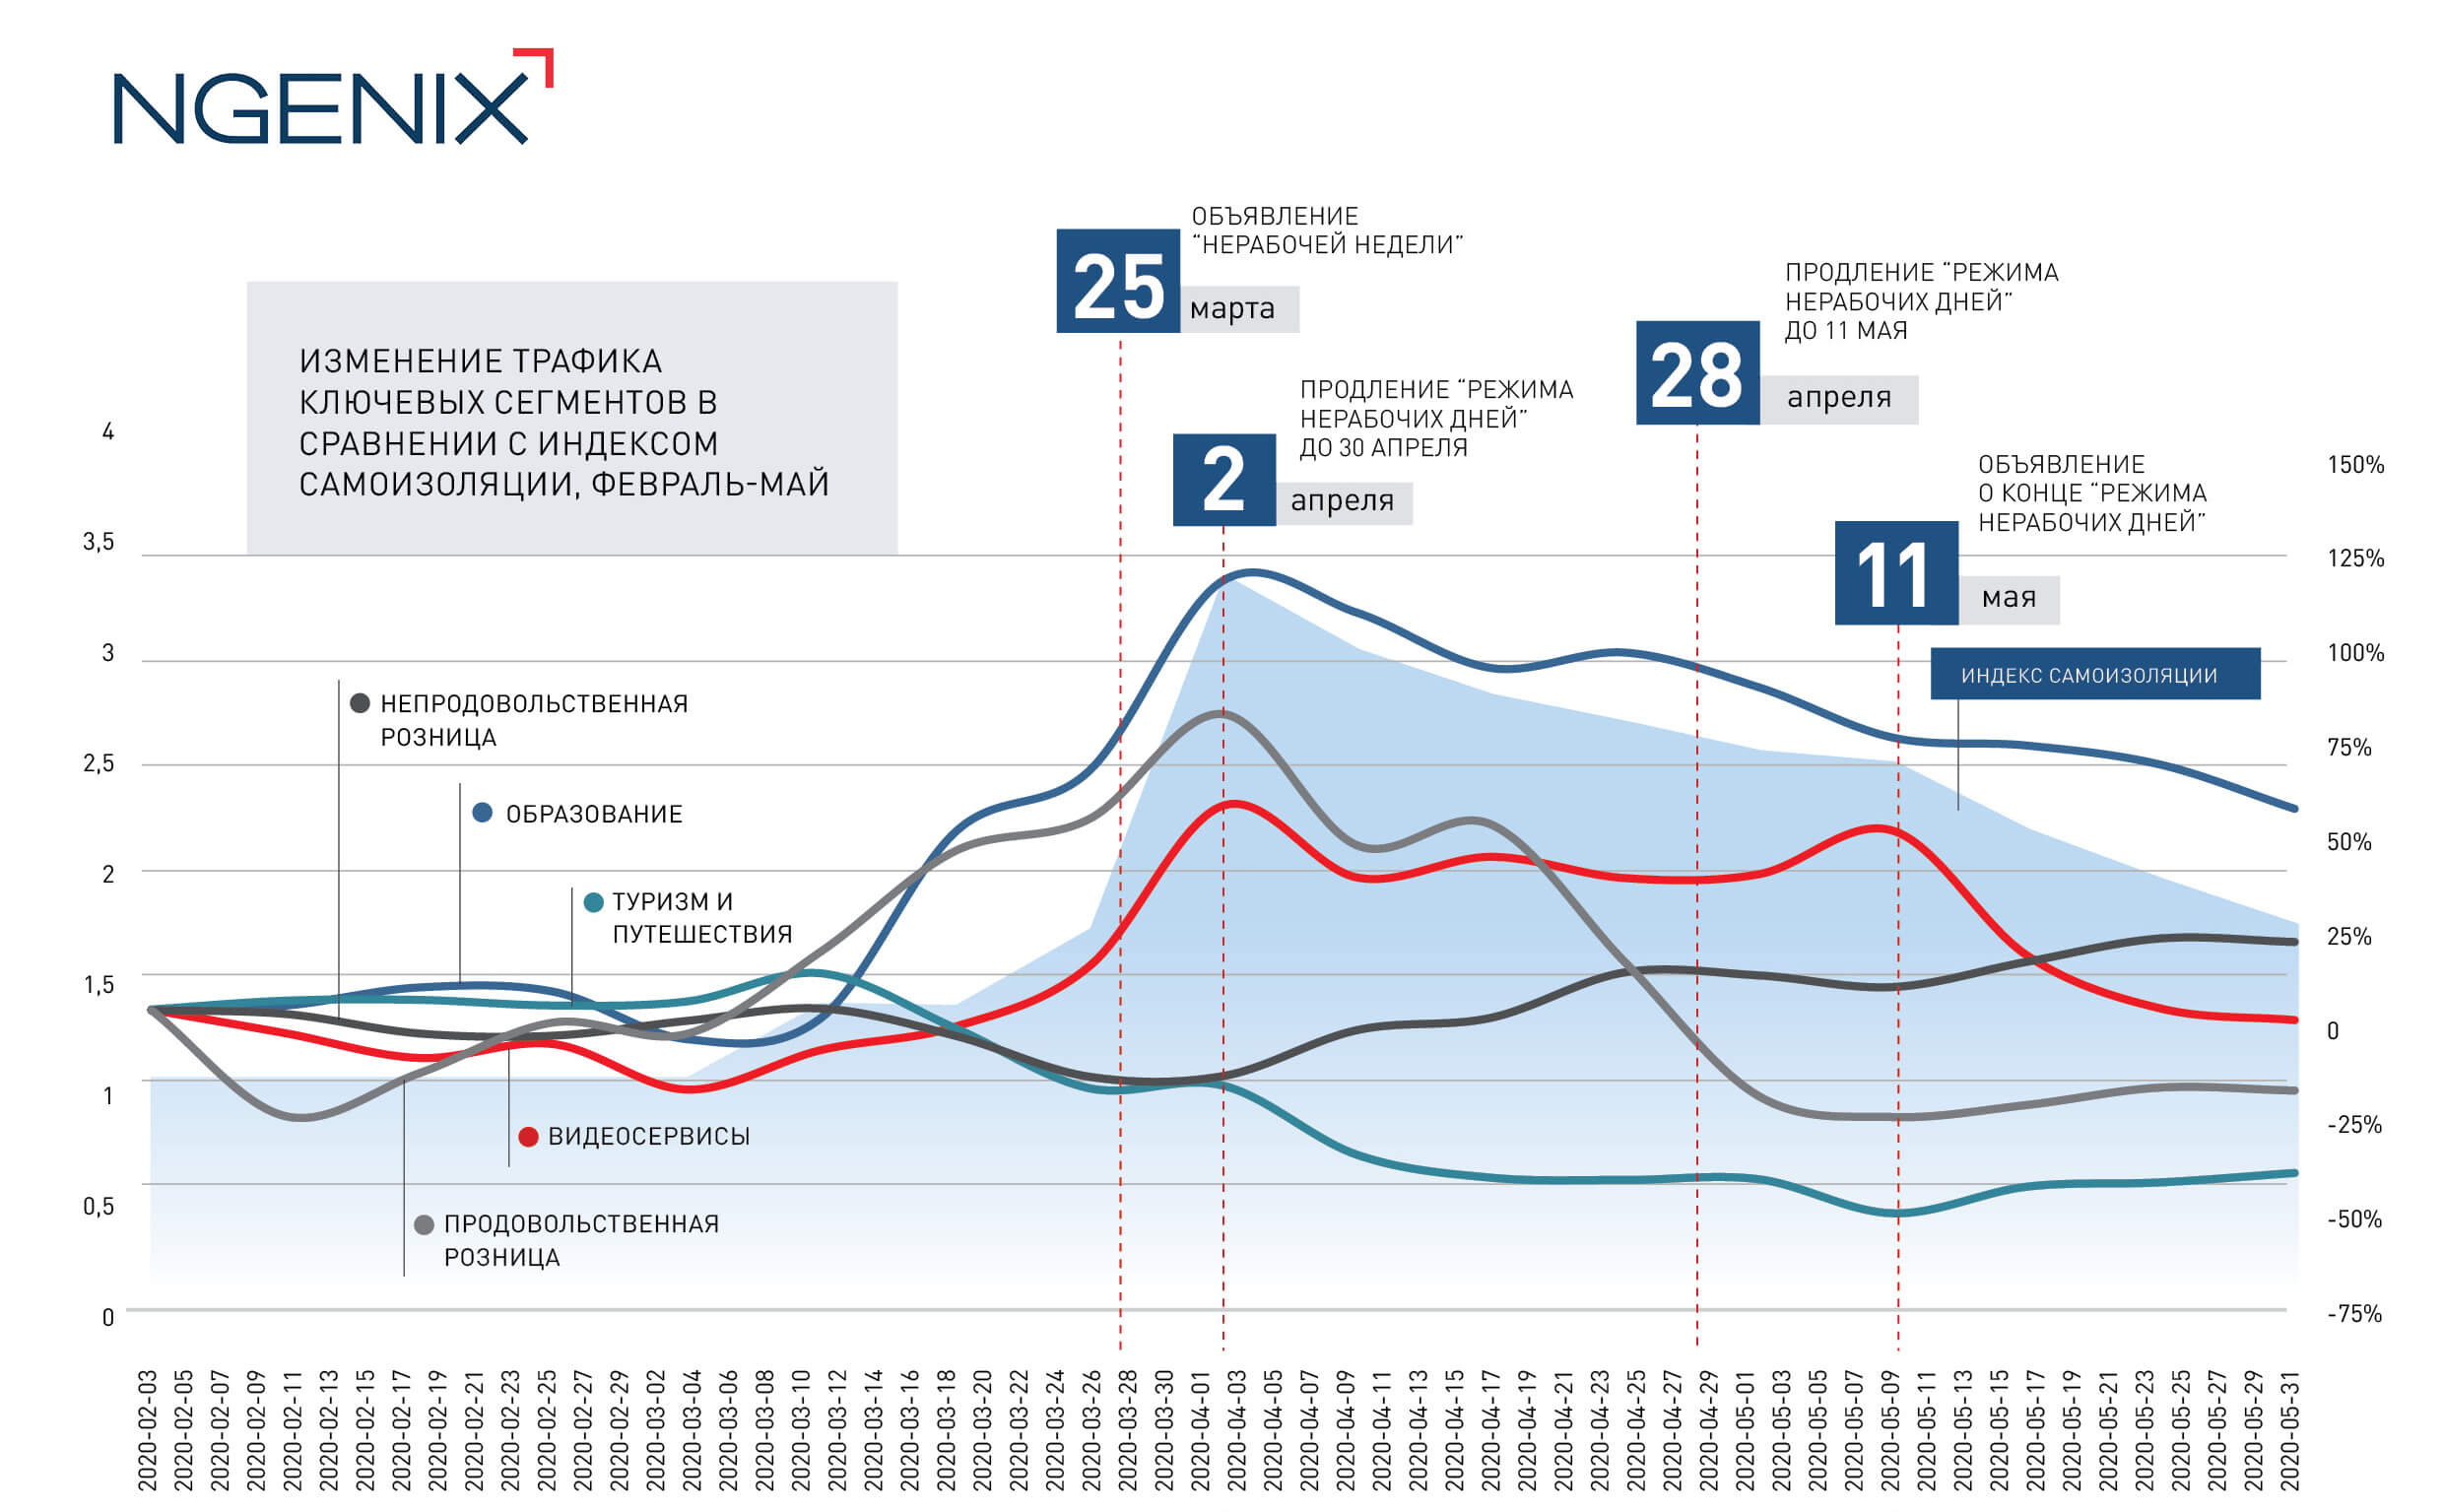 Инфографика NGENIX тренды веб-трафика за 2 месяца карантина